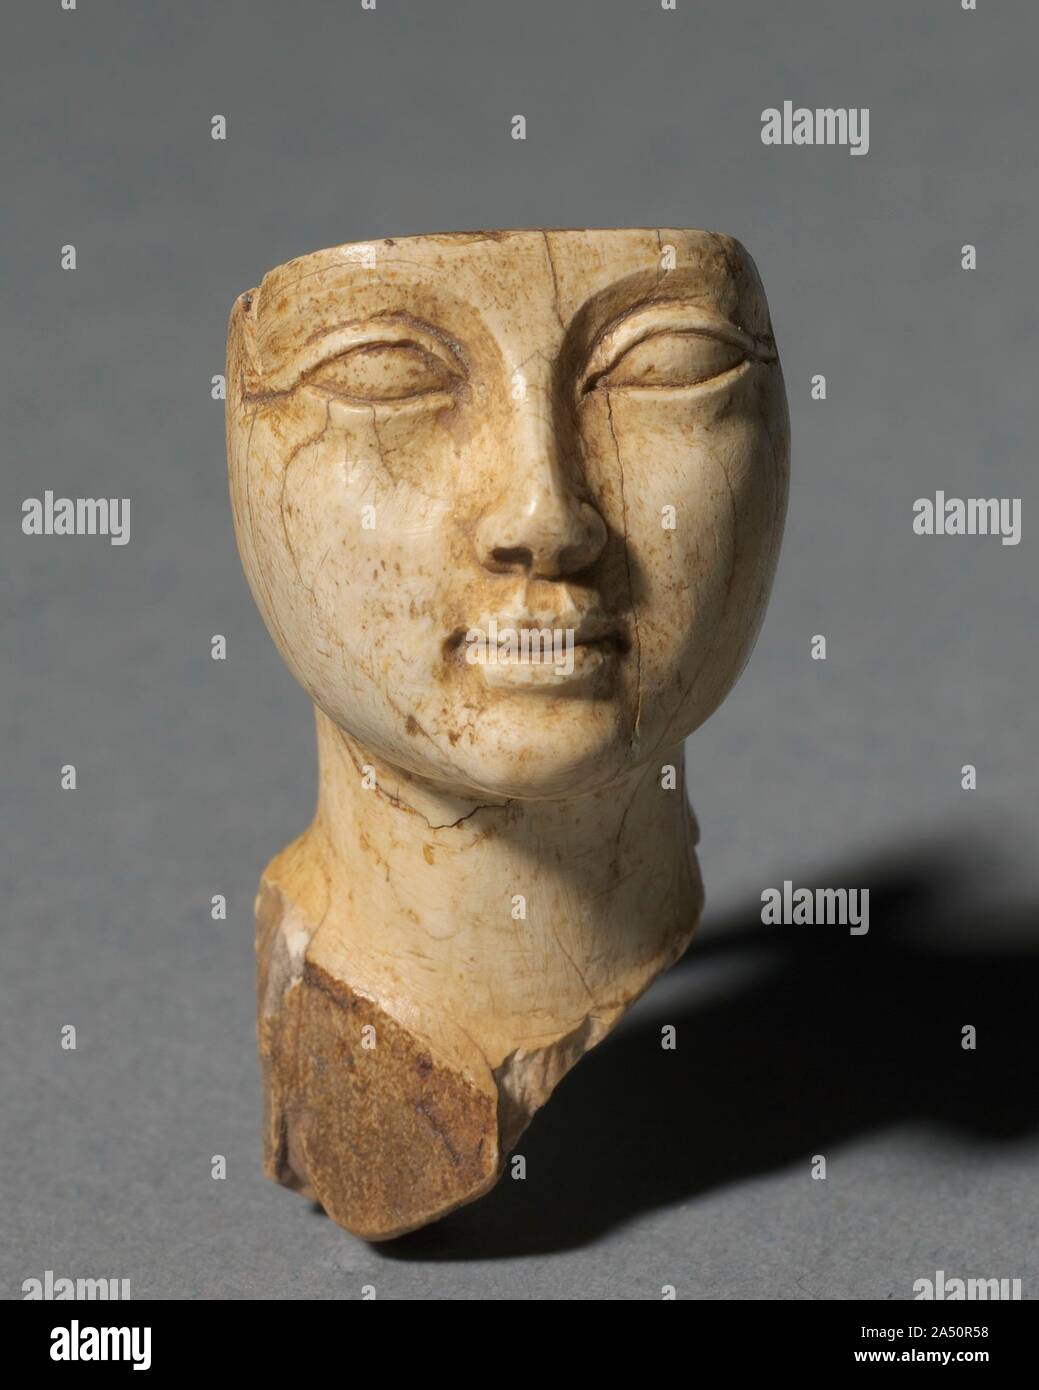 Gesicht von einer kosmetischen Löffel, 1391-1353 BC. Die alten ägyptischen Männern und Frauen liebte Kosmetik. Unguents, Öle und Düfte aus der aromatischen Pflanze Harze und Gummen gemacht wurden mit großem Aufwand aus fernen Ländern gewonnen. Die Objekte identifiziert mit Kosmetik, aufwendige Behandlung waren. Die luxuriösen Obsidian und gold Becher Tips an den kostbaren Inhalt es einmal statt. Andere sind phantasievoll in Form, wie ein straußenei. Der Gott Bes, Schutzgott der Kosmetik, selbst ist der Gegenstand einer bunten jar. Die fein geschnitzten menschliches Gesicht und den Kopf einer Giraffe dekoriert aufwendige Elfenbein kosmetische Löffel. Stockfoto